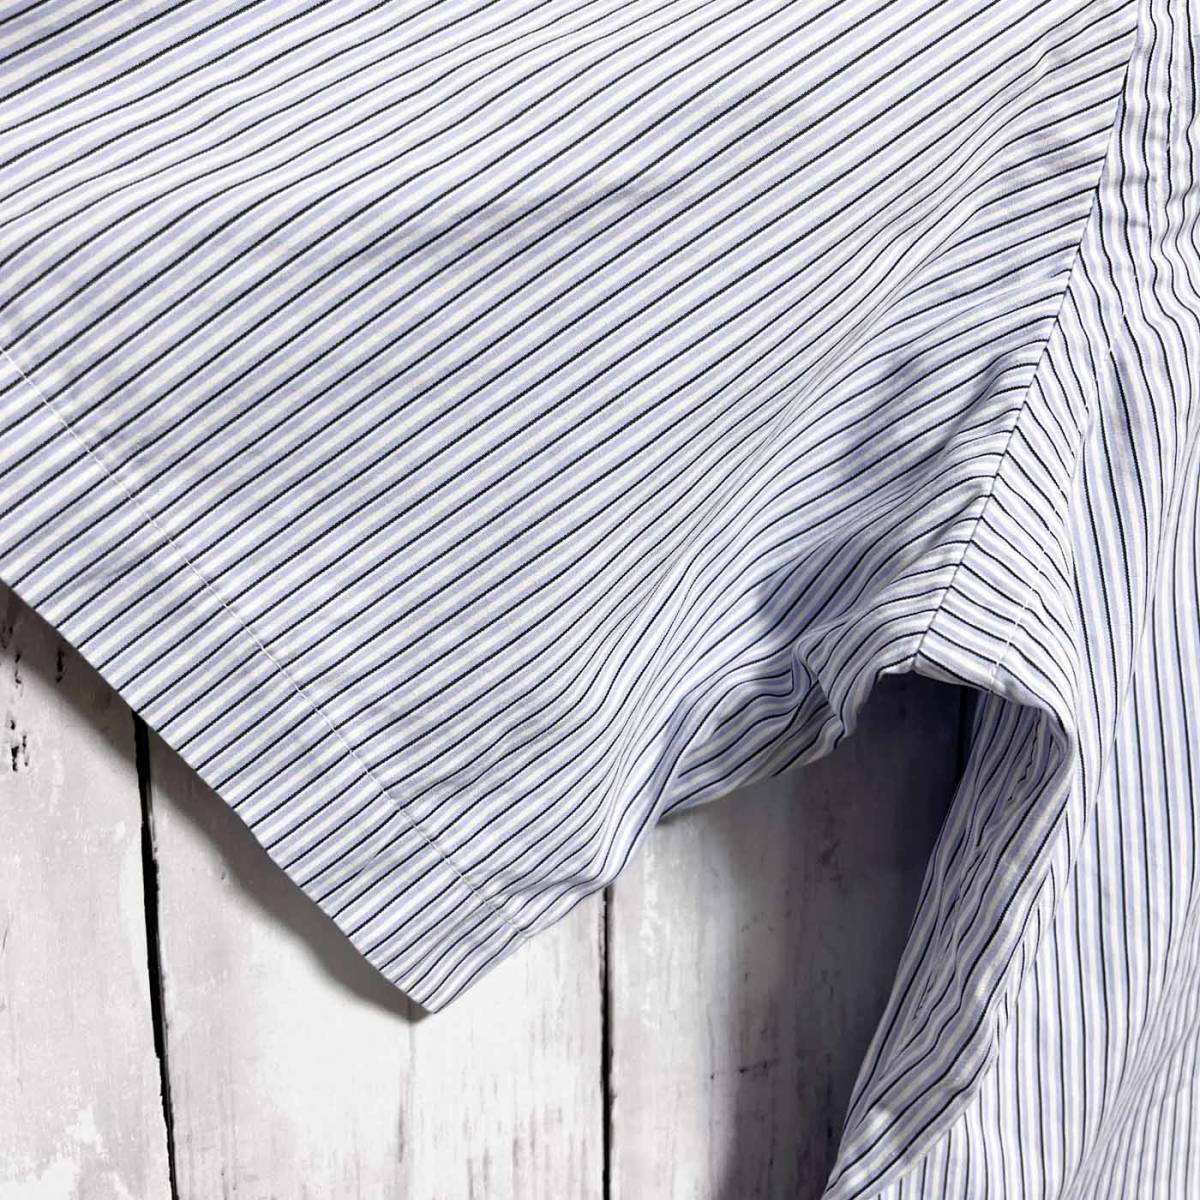 ラルフローレン Ralph Lauren 半袖シャツ ストライプシャツ メンズ ワンポイント コットン100% Lサイズ 3‐483